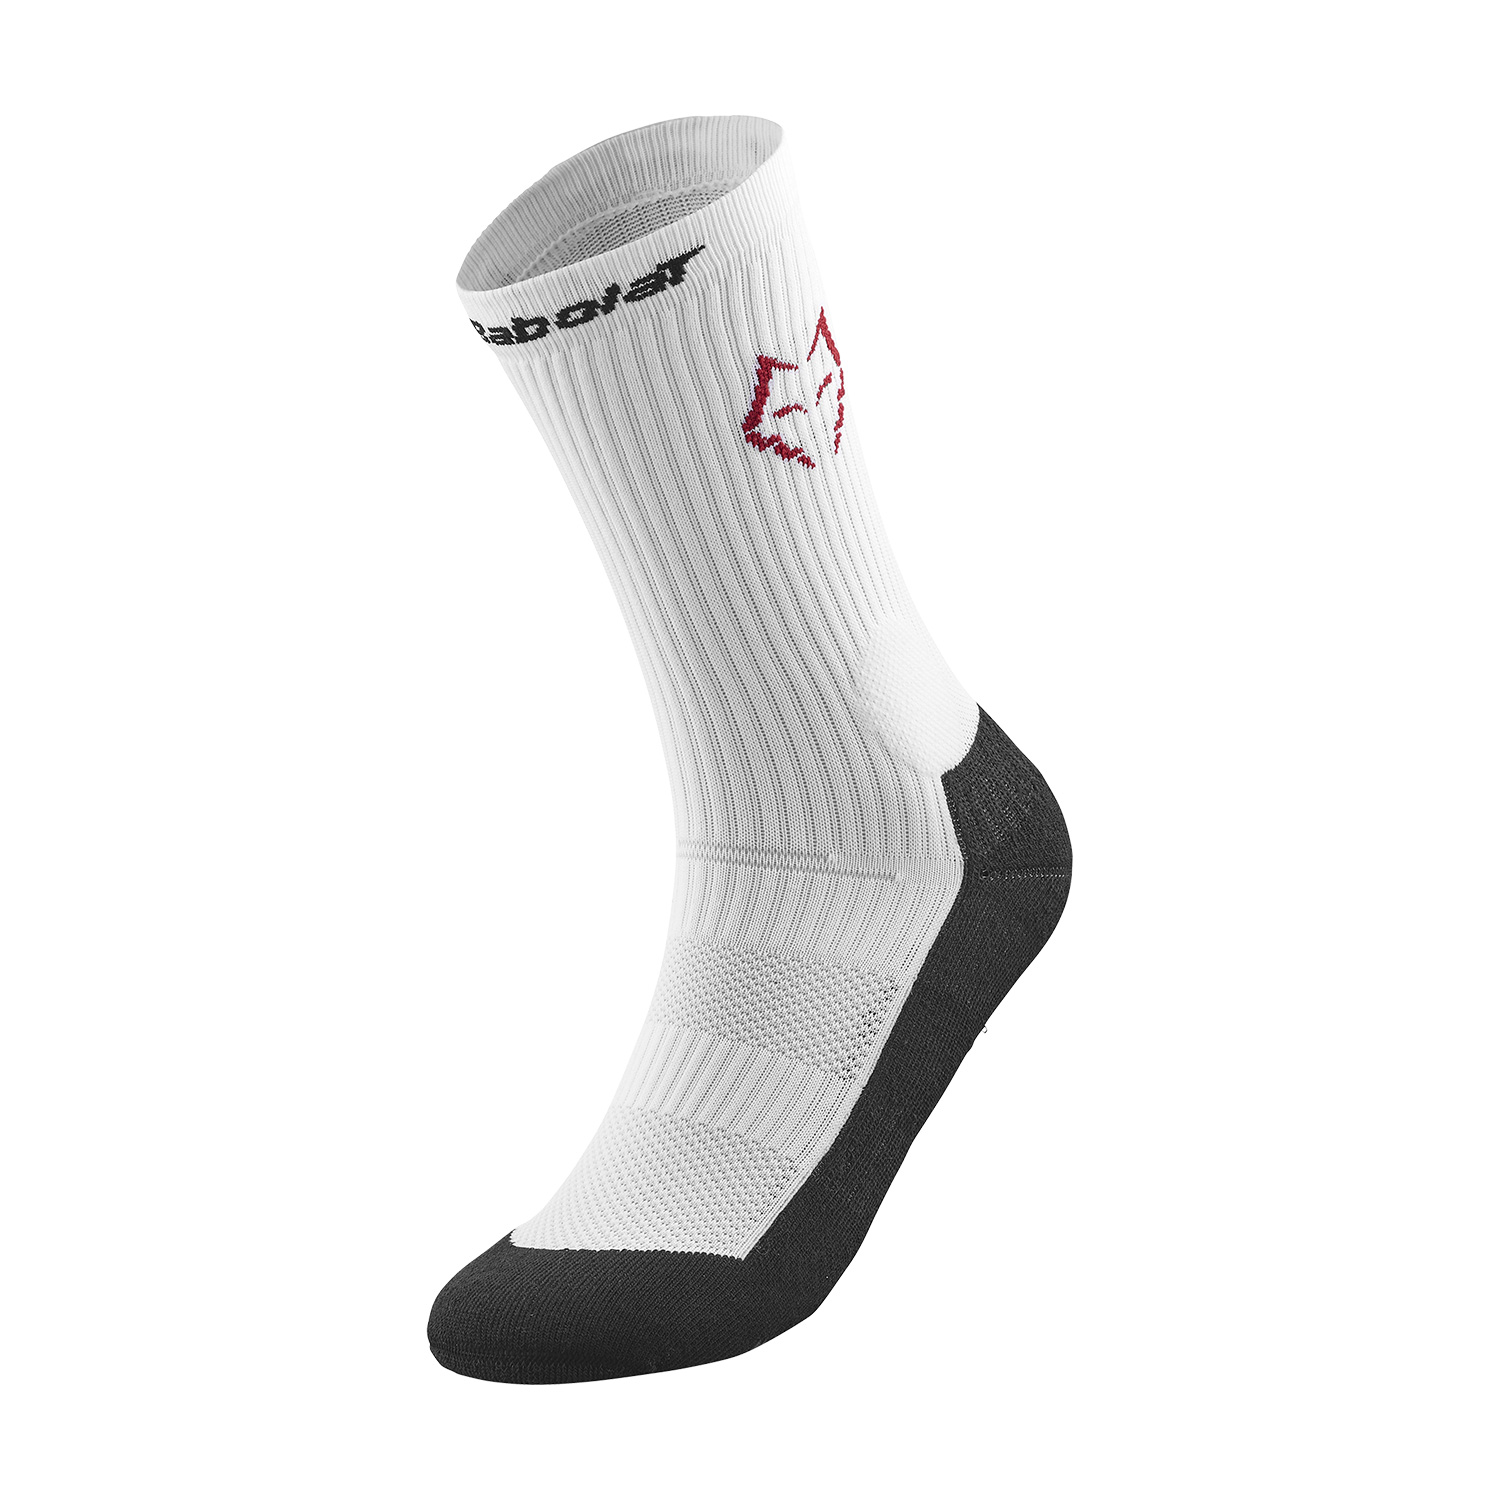 Babolat Lebron Socks - White/Black